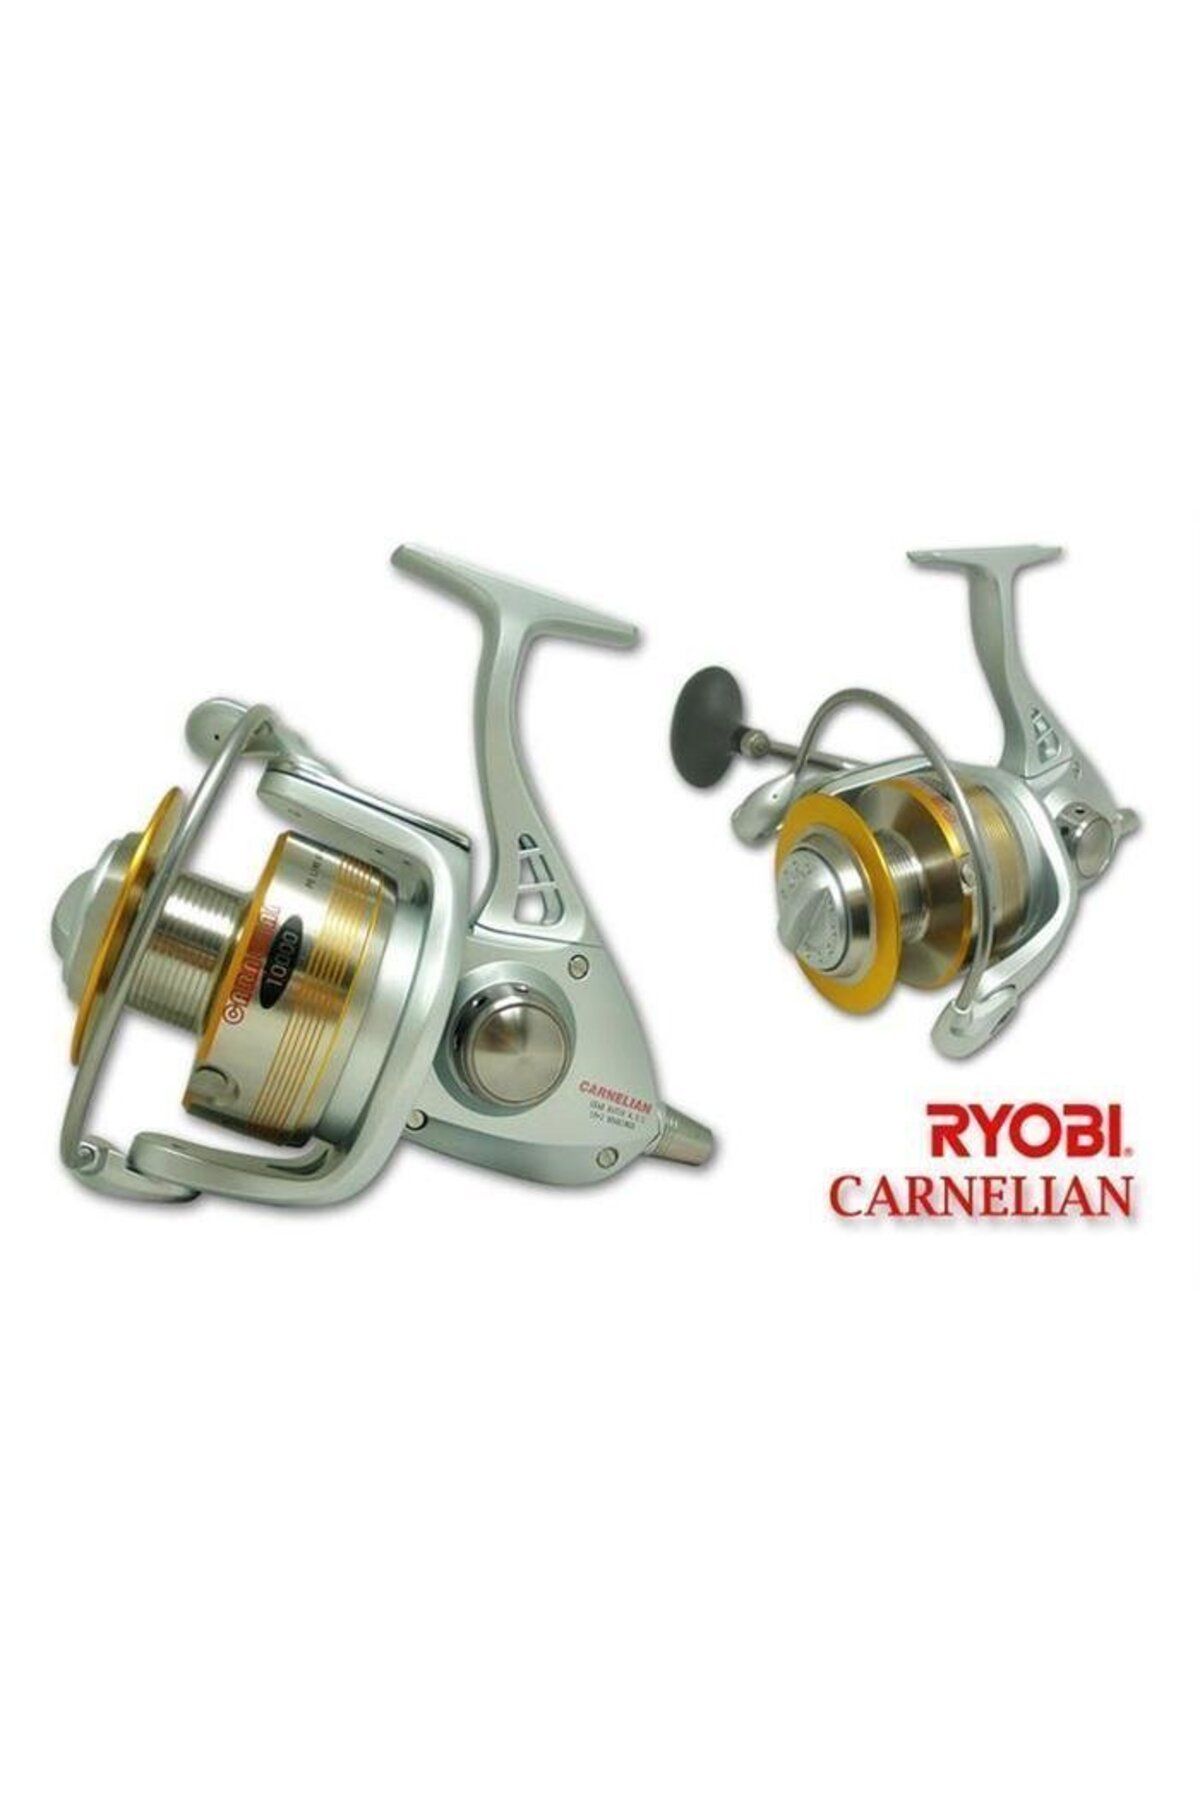 Ryobi Carnelian 12000 ( JIG REEL )